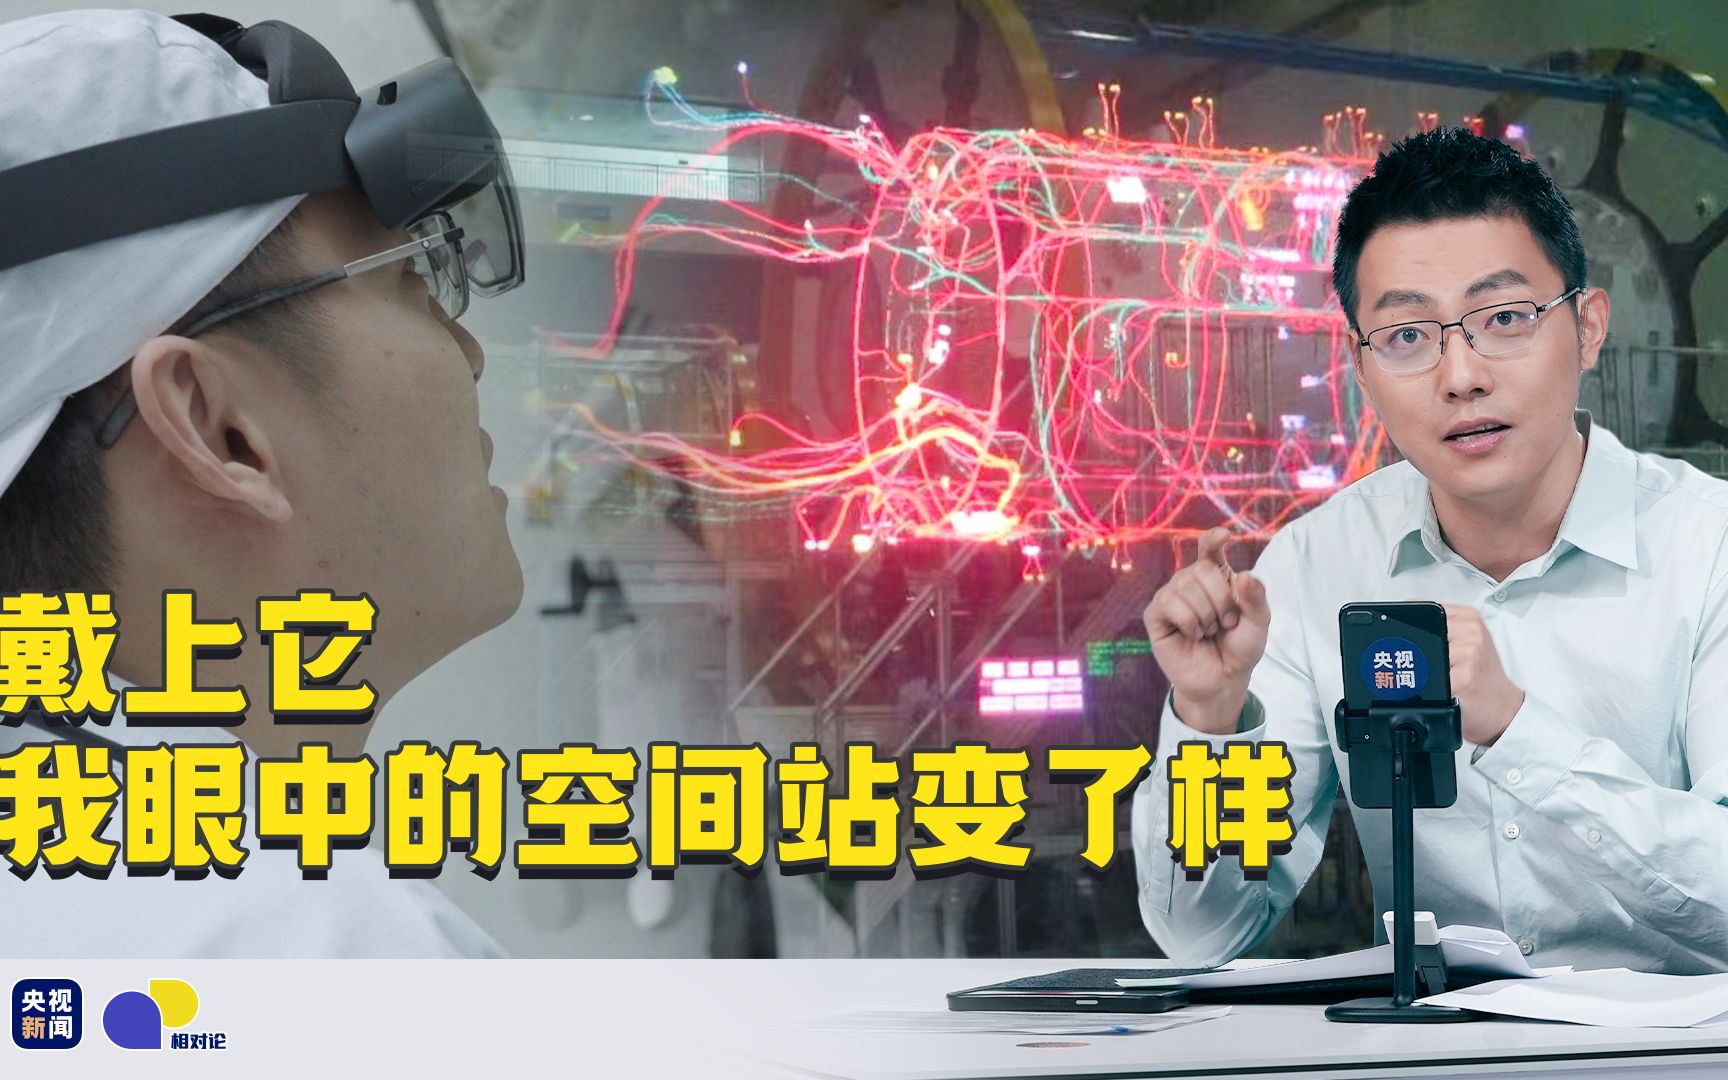 【相对论】90后用AR眼镜装配中国空间站